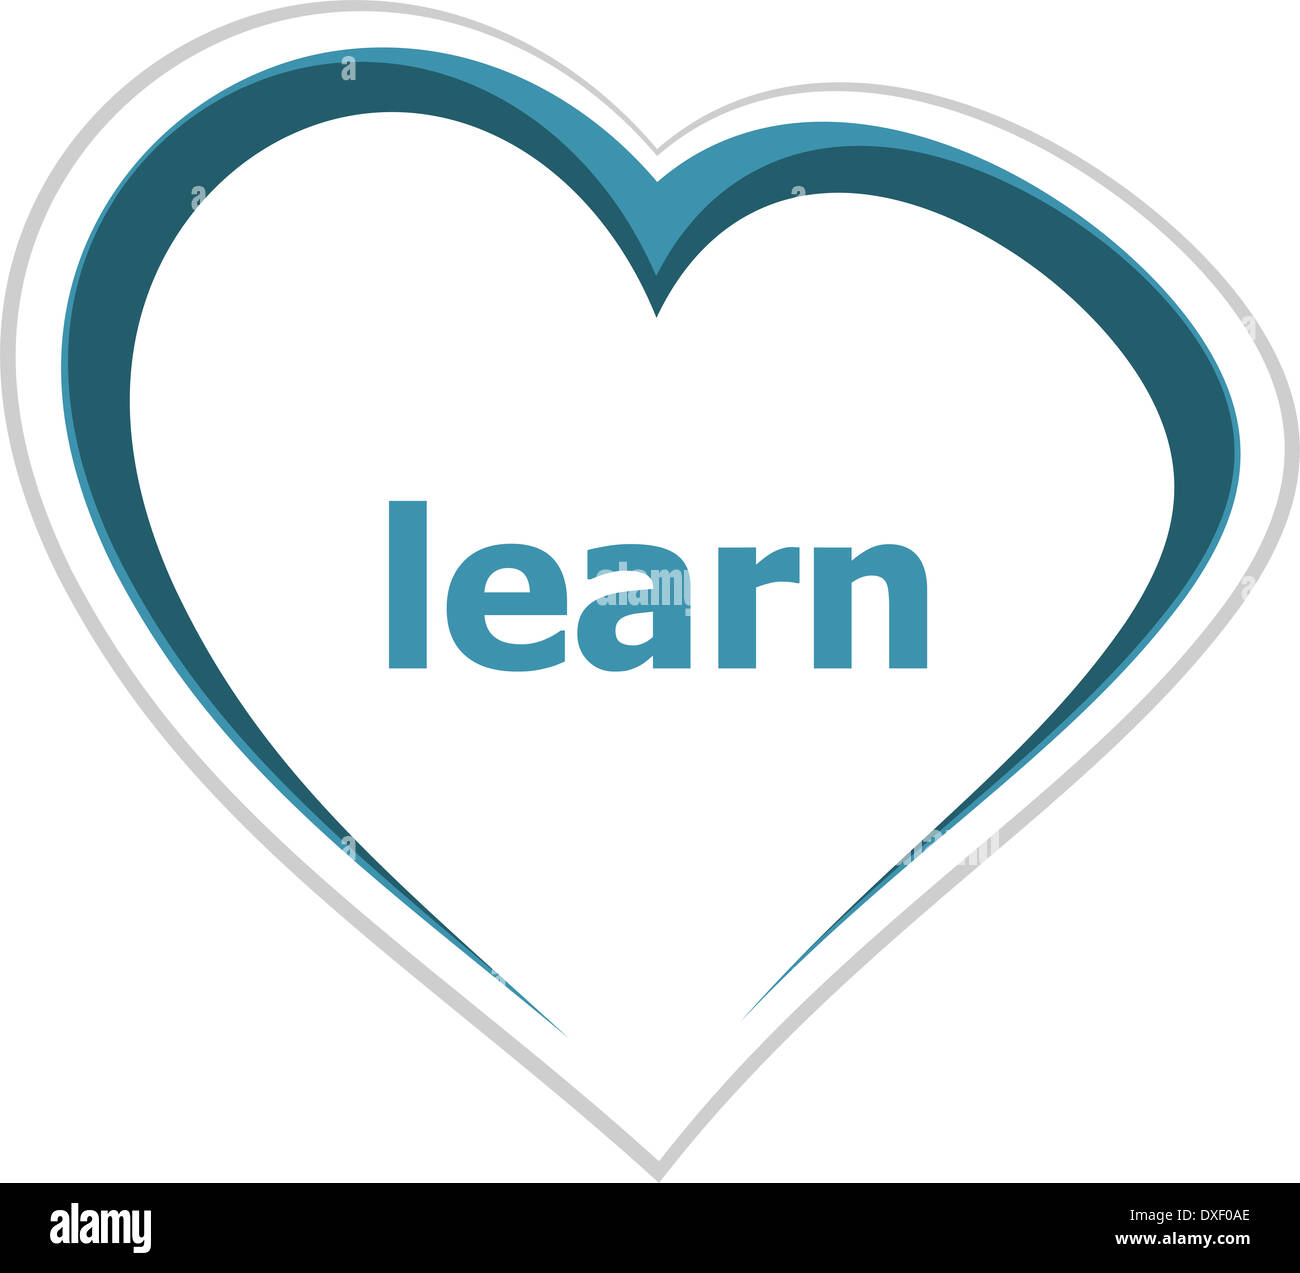 Concept de l'éducation, apprendre word sur coeur d'amour Banque D'Images